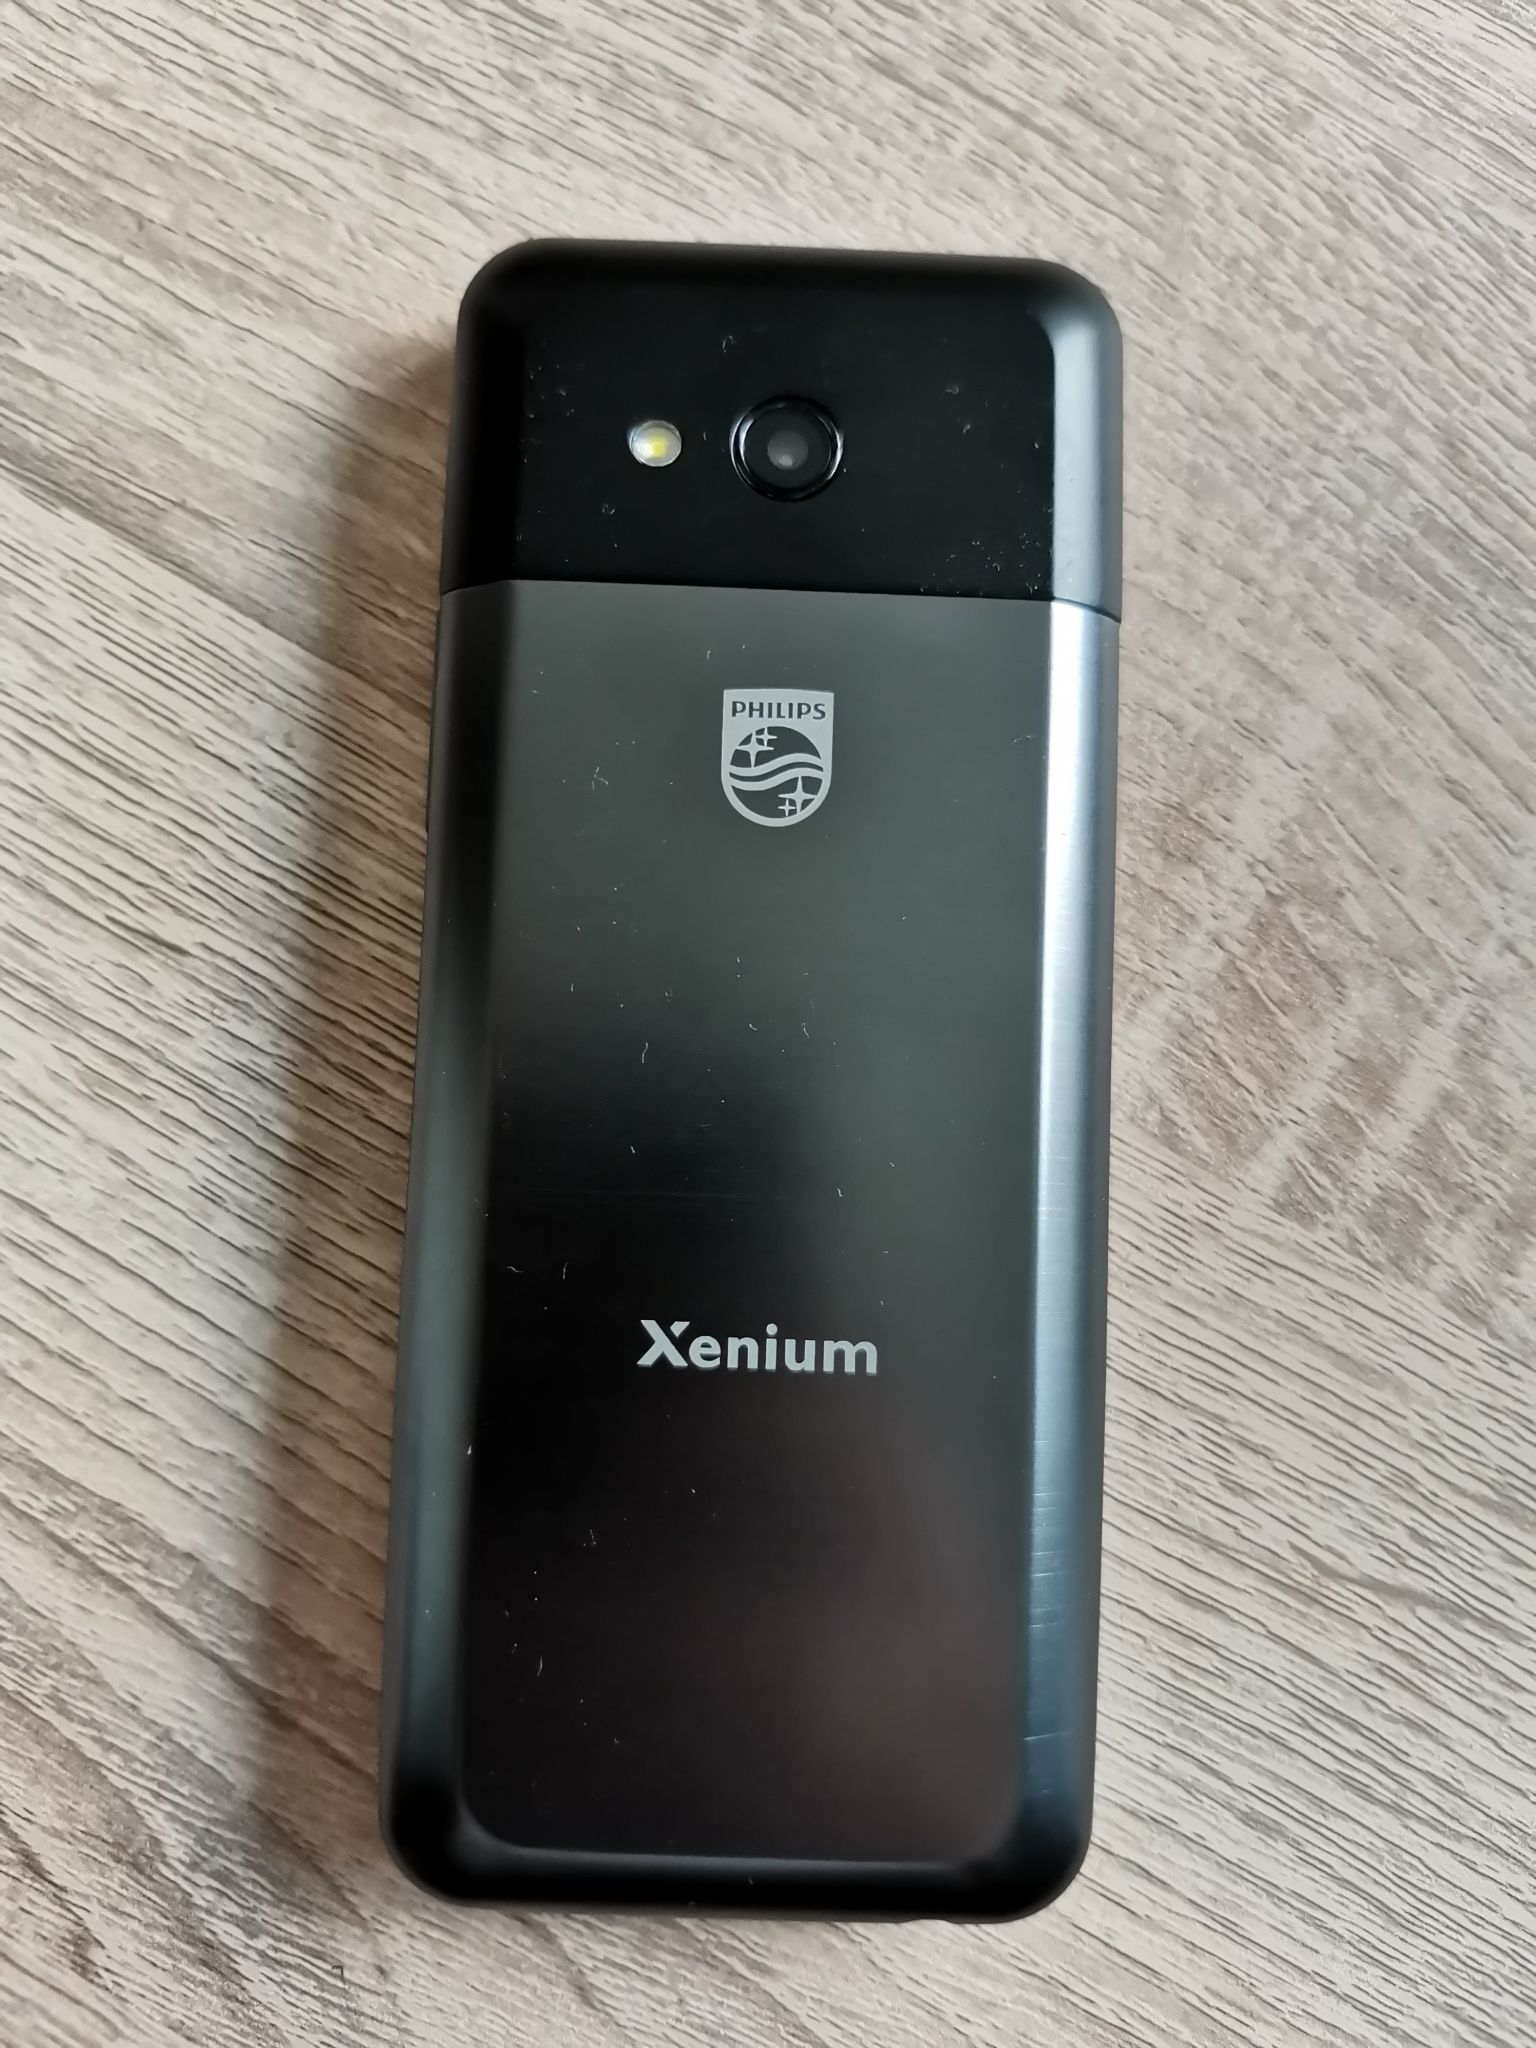 Xenium e590 купить. Philips Xenium e590. Мобильный телефон Philips Xenium e590 Black. Philips Xenium e590 Black (черный). Мобильный телефон Philips Xenium e590 Black размер.